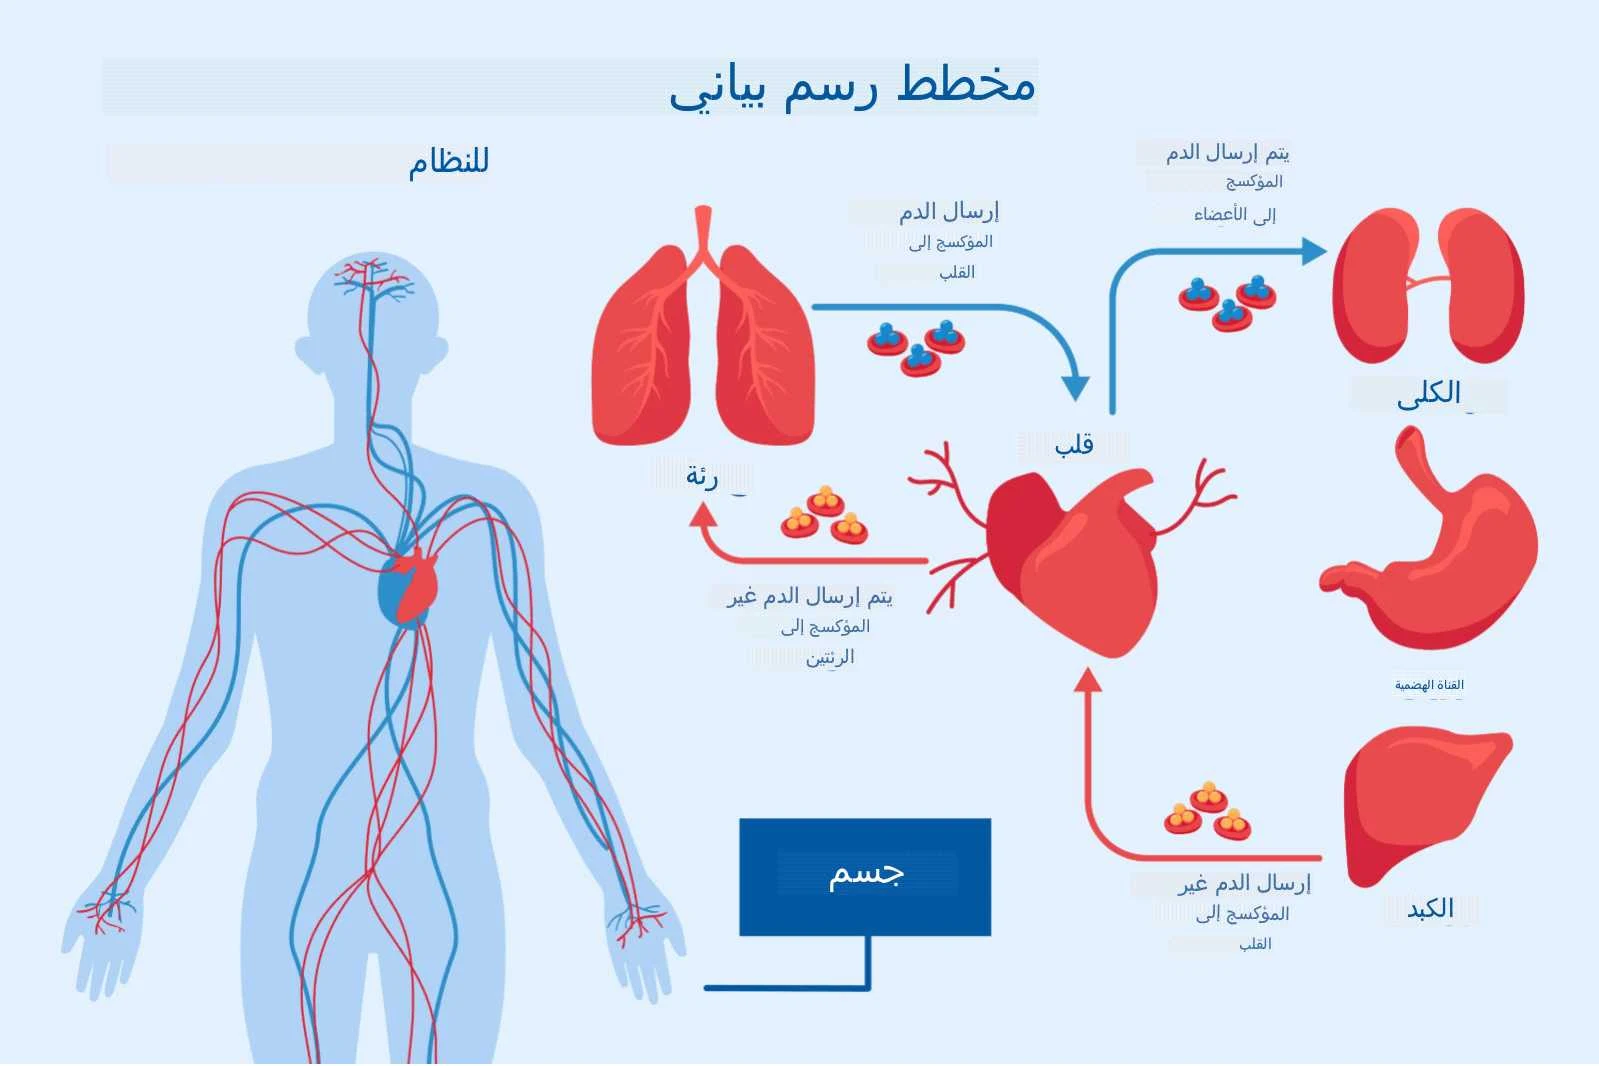 مخطط رسم بياني للنظام إرسال الدم المؤكسج إلى القلب رئة يتم إرسال الدم غير المؤكسج إلى الرئتين جسم قلب يتم إرسال الدم المؤكسج إلى الأعضاء الكلى القناة الهضمية إرسال الدم غير المؤكسج إلى القلب الكبد